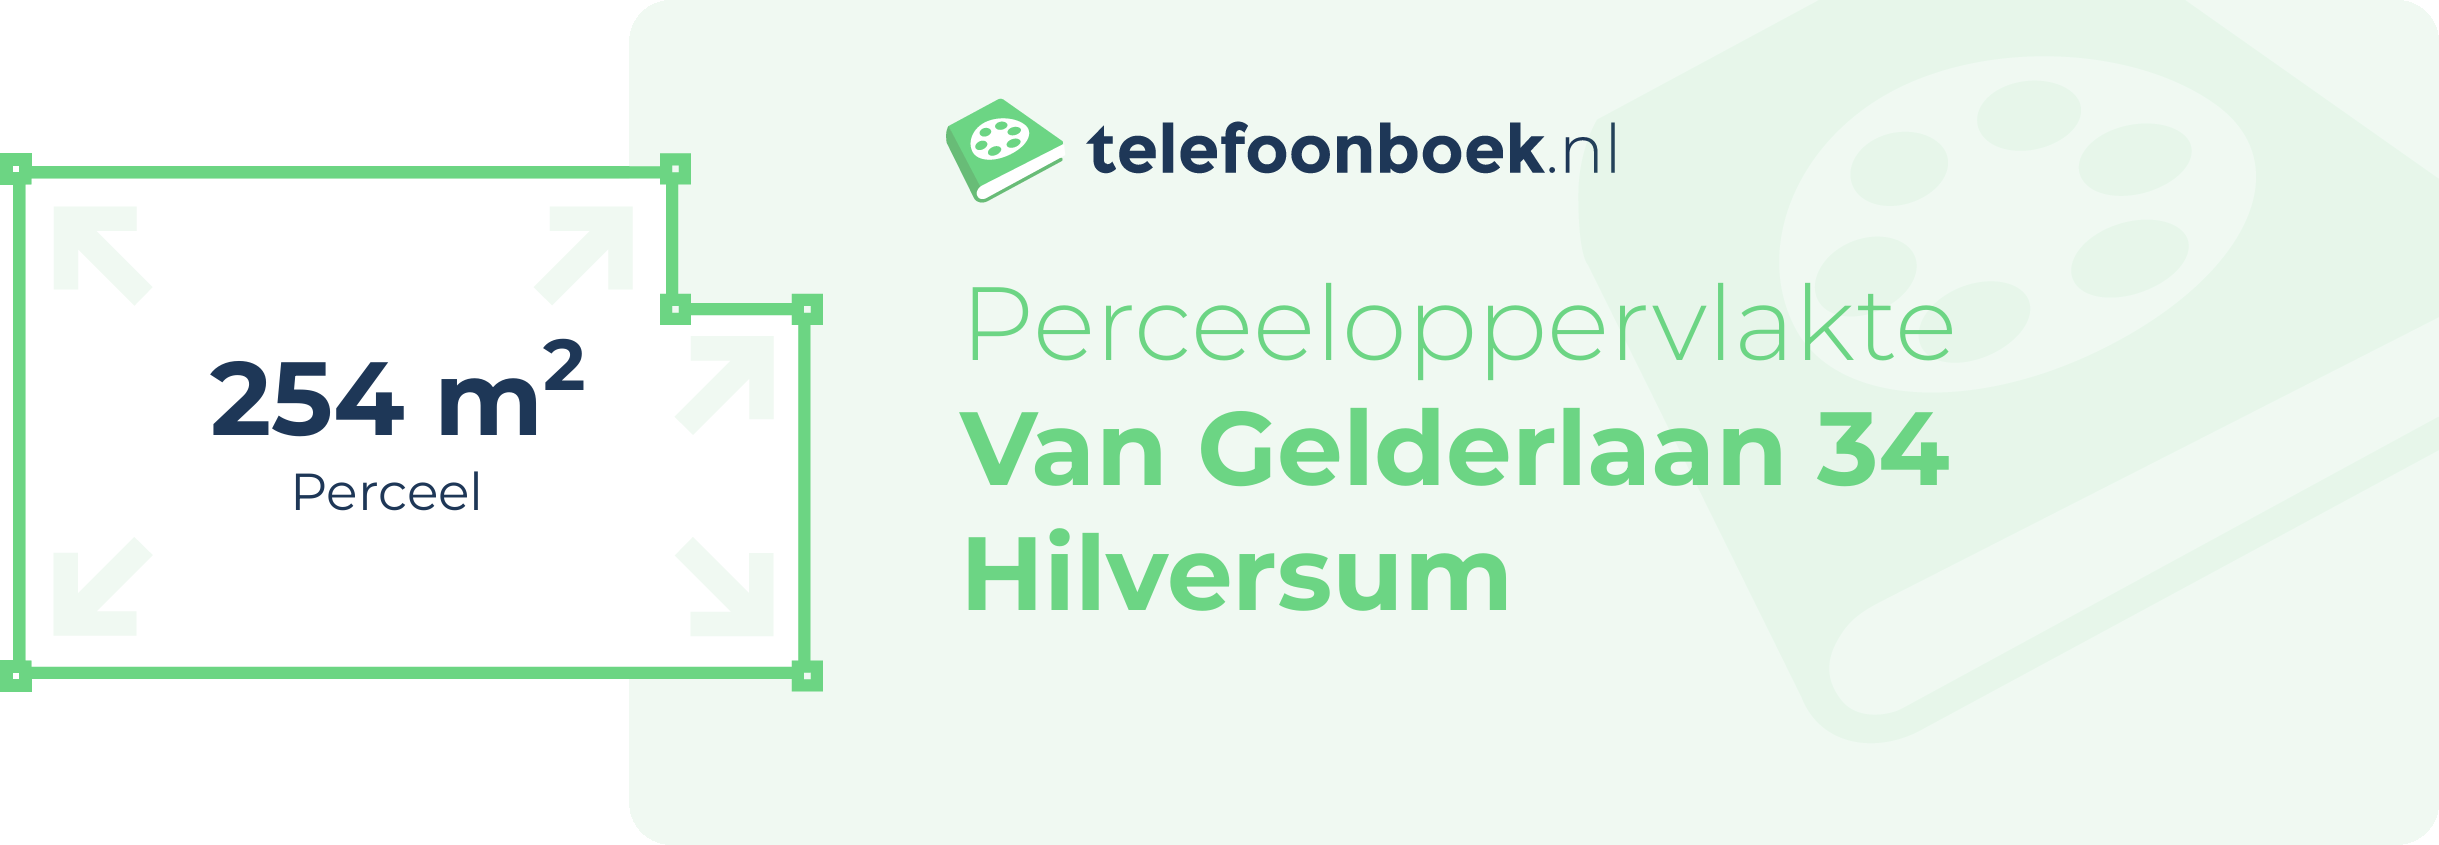 Perceeloppervlakte Van Gelderlaan 34 Hilversum